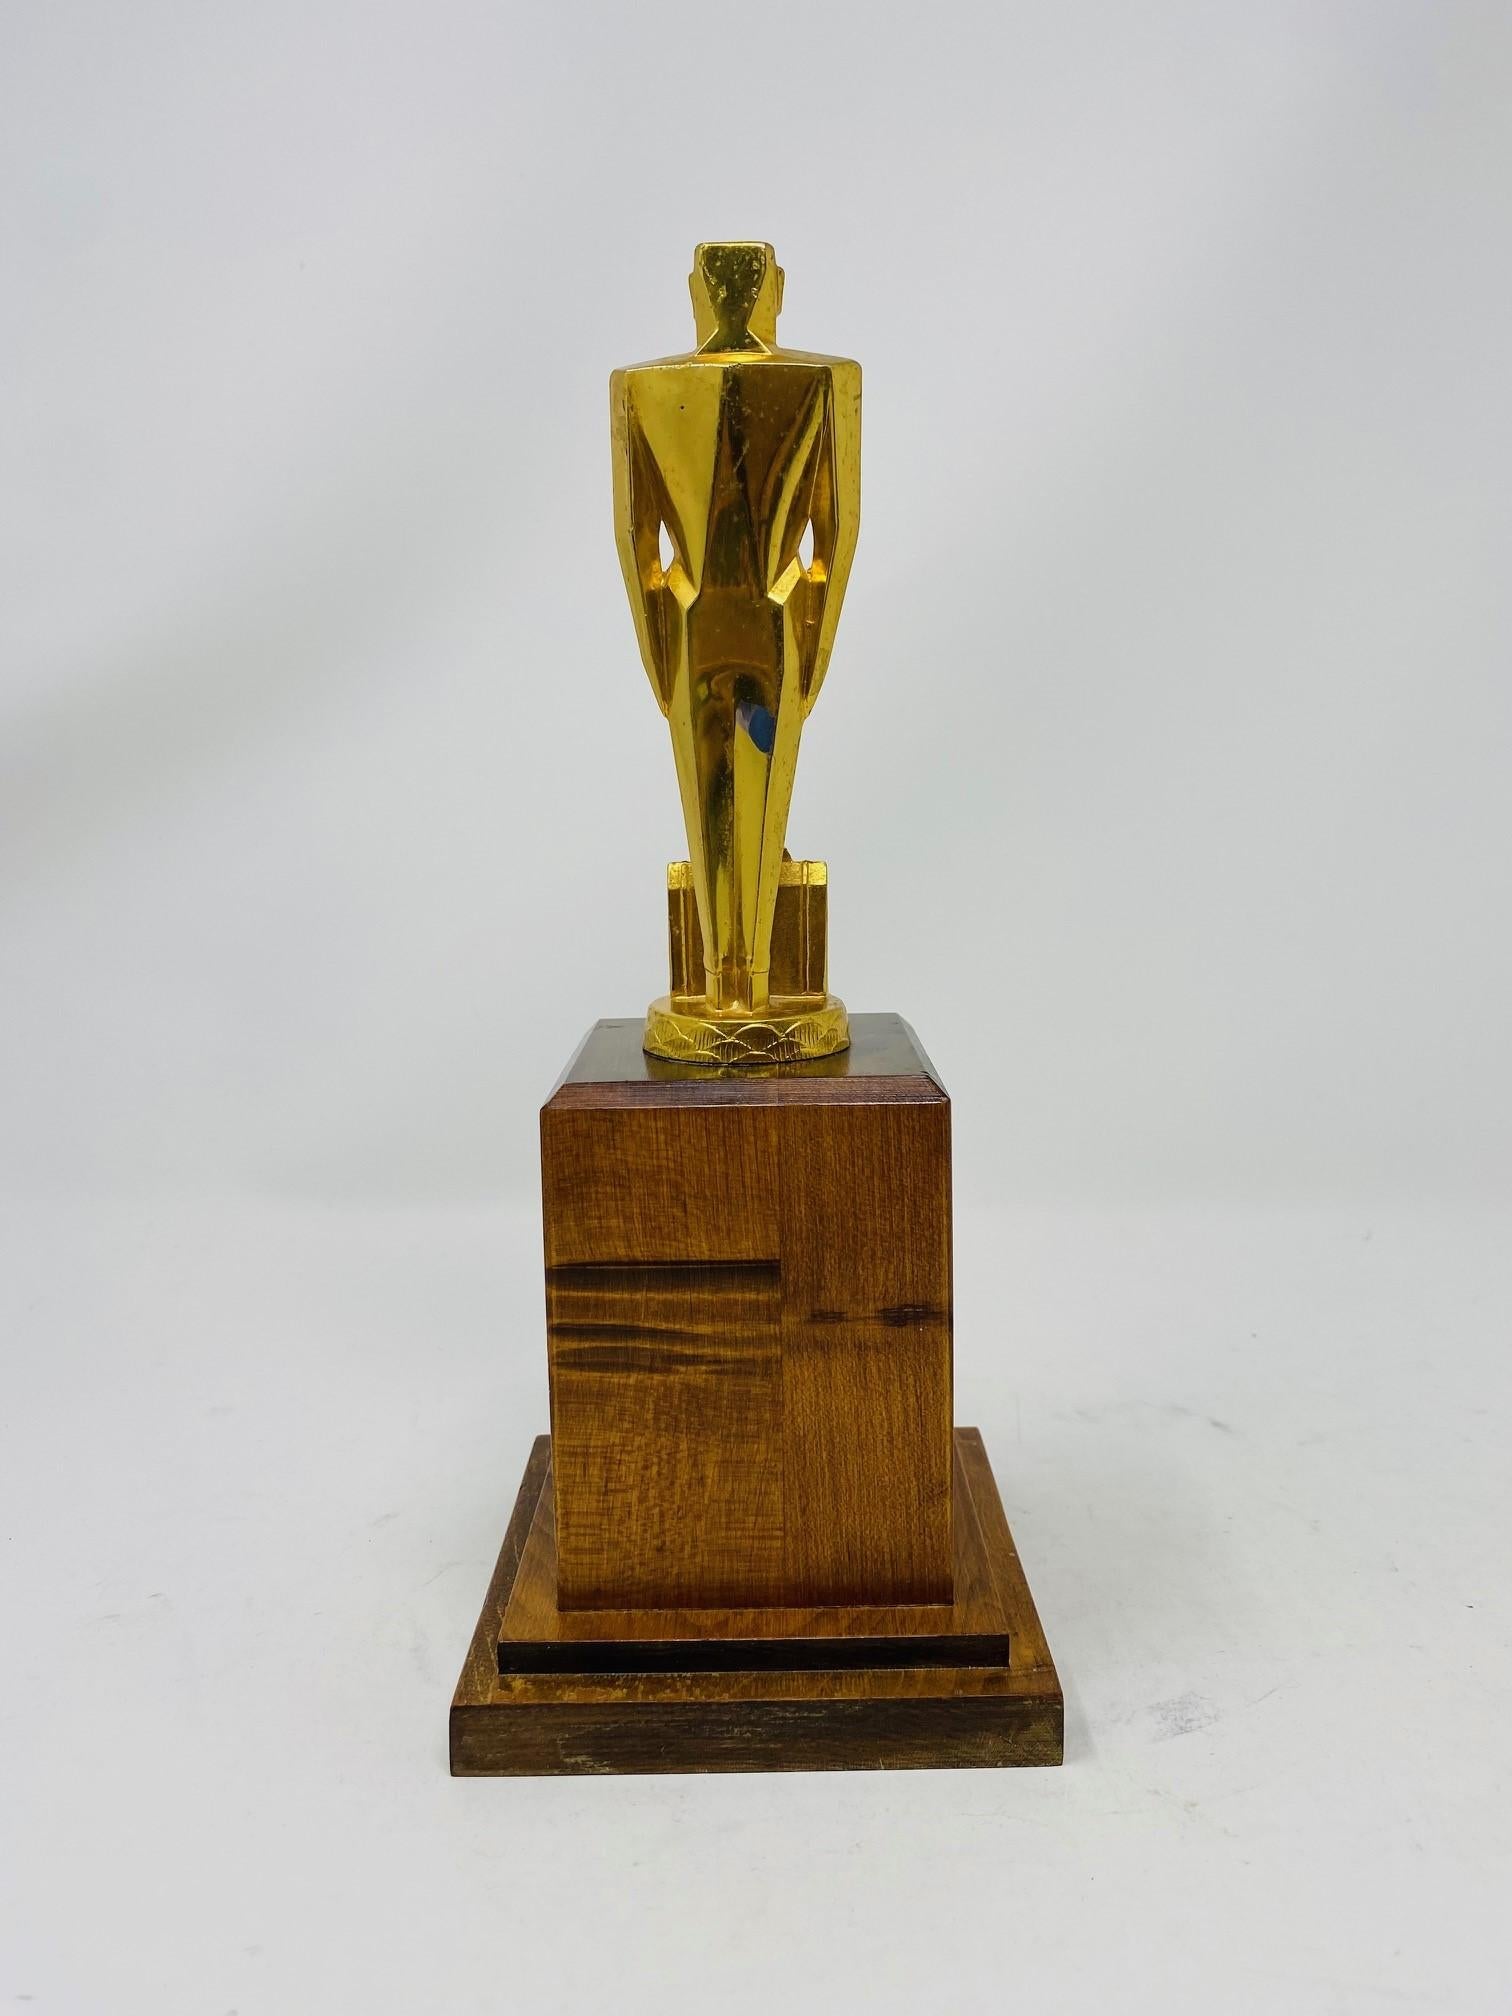 American 1930s Art Deco Gilded Trophy Sculpture 